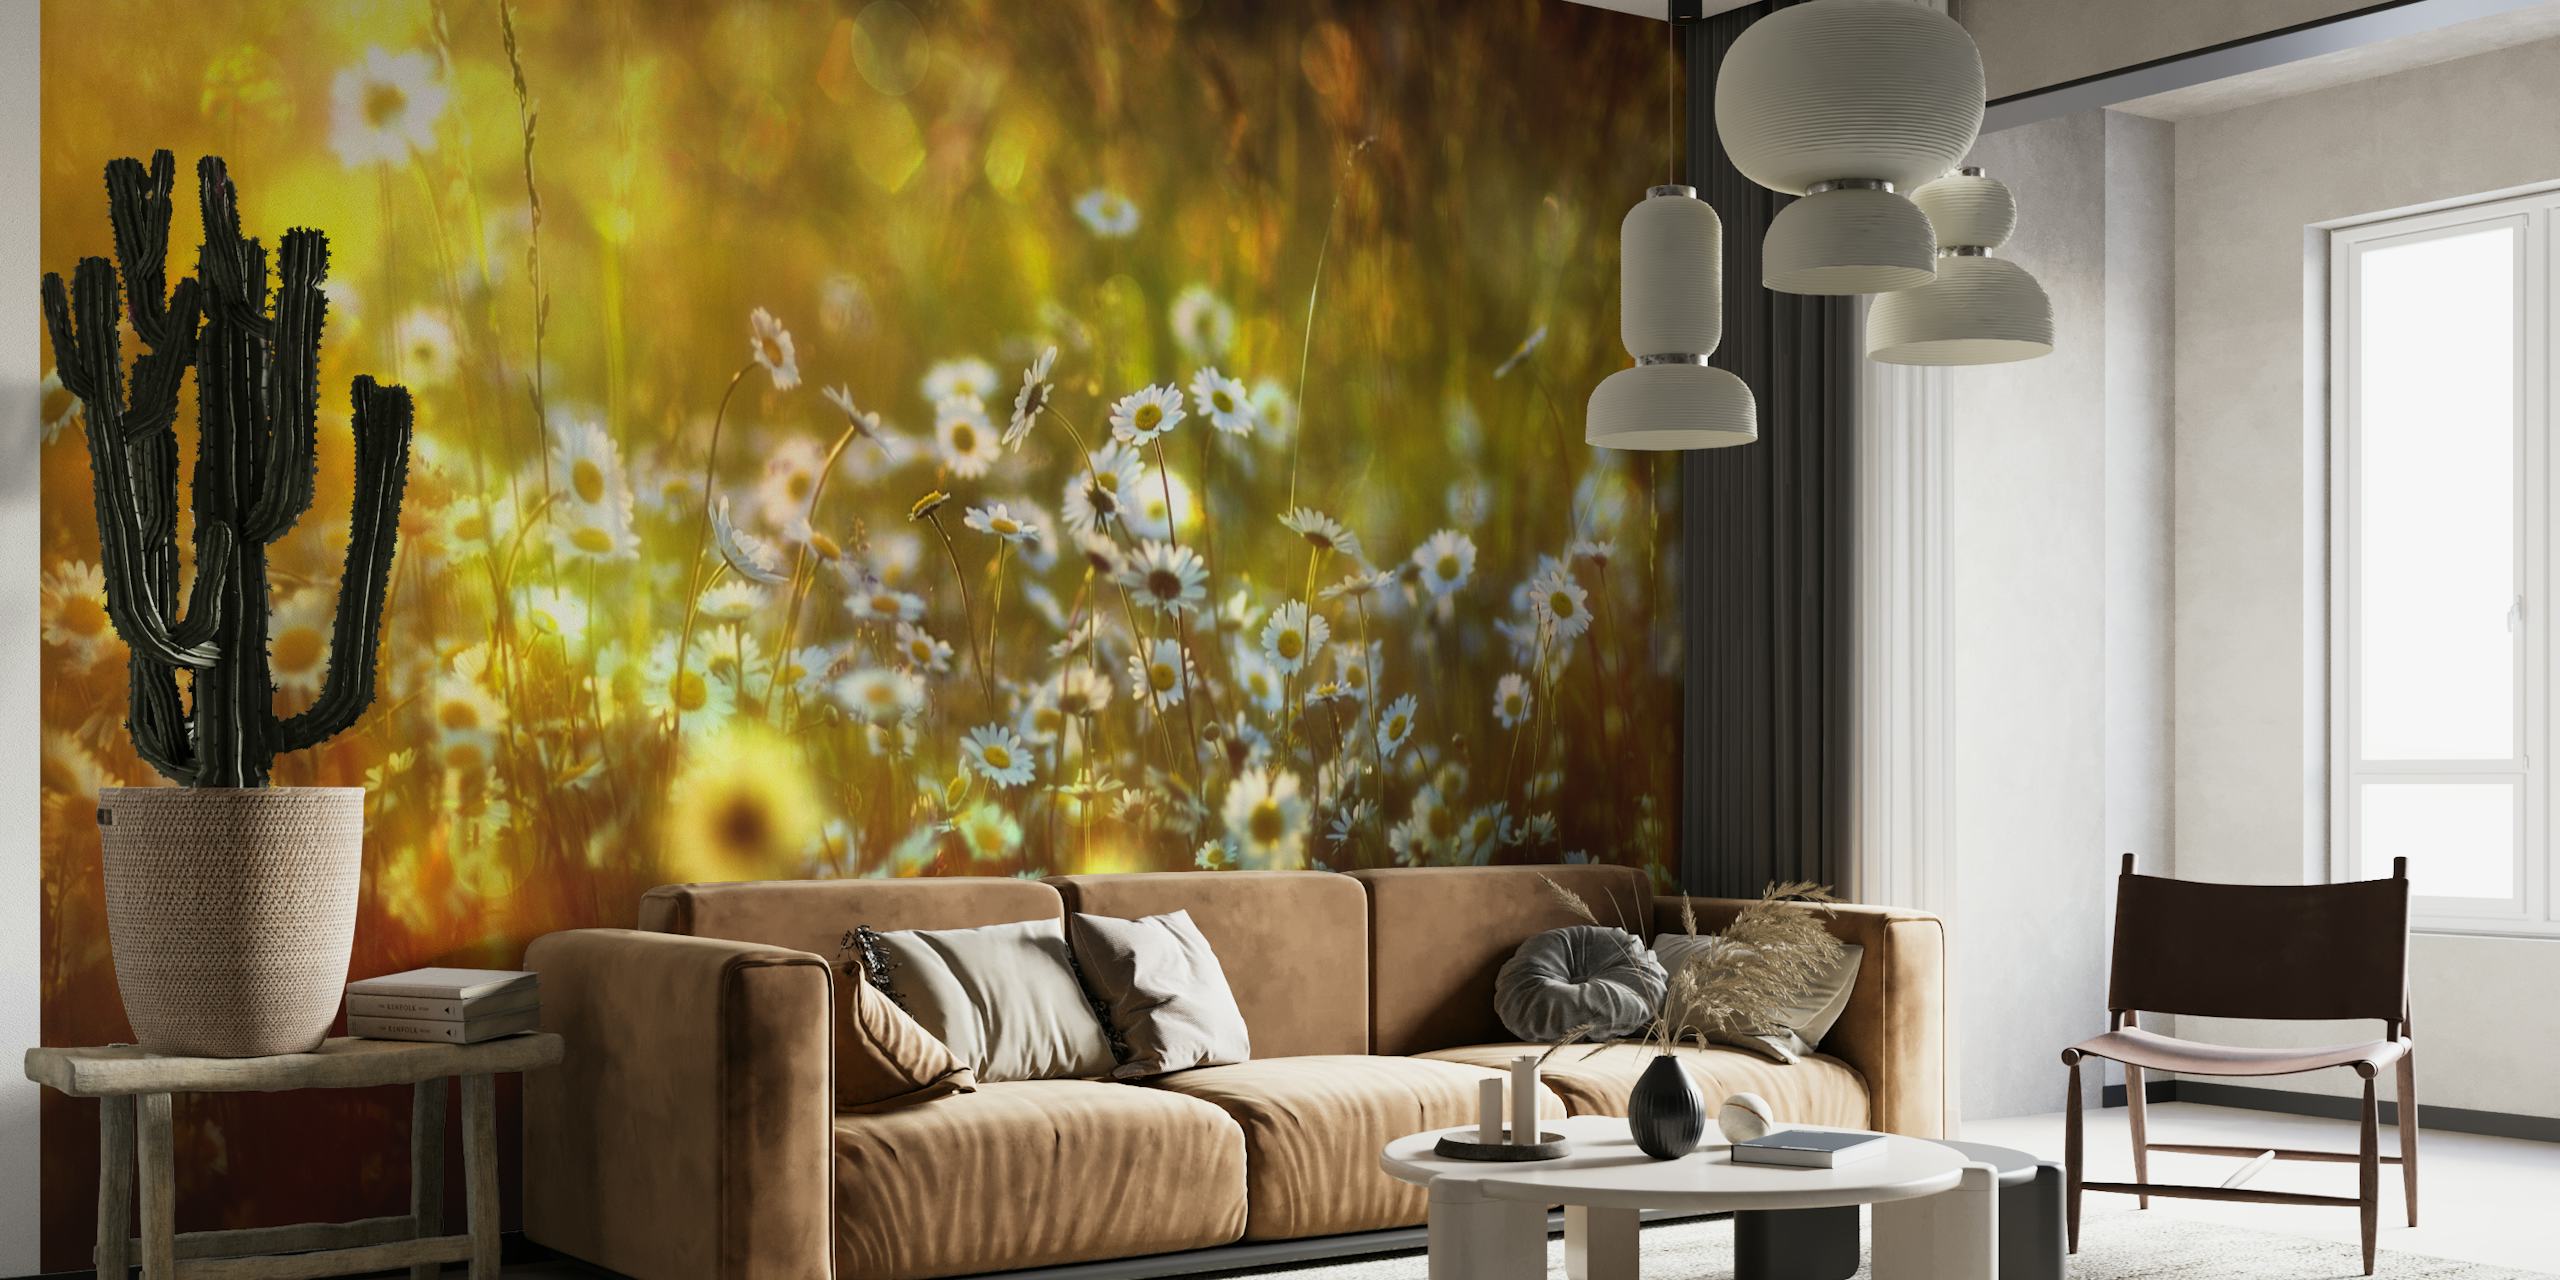 Wonderland zidni mural čarobne, suncem obasjane šume sa svjetlucavim detaljima flore